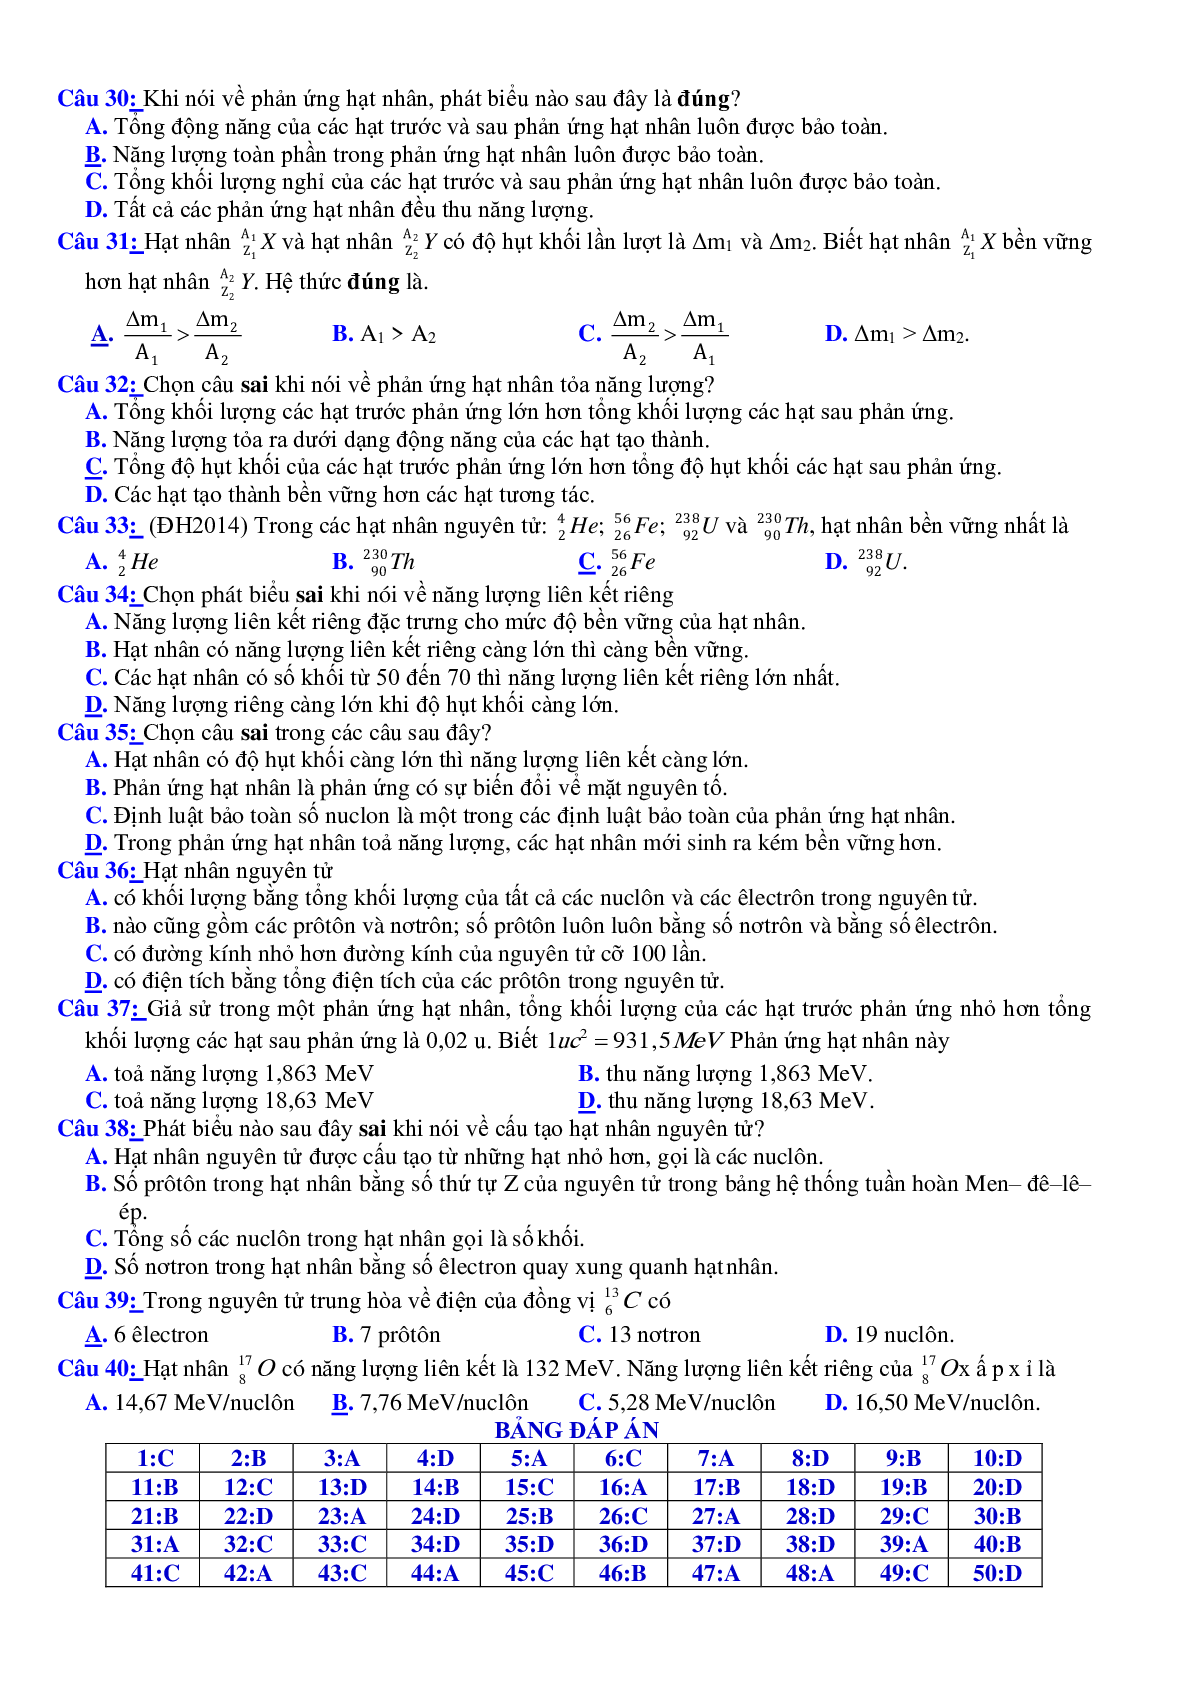 Chuyên đề: Hạt nhân nguyên tử, sự phóng xạ môn Vật Lý lớp 12 (trang 6)